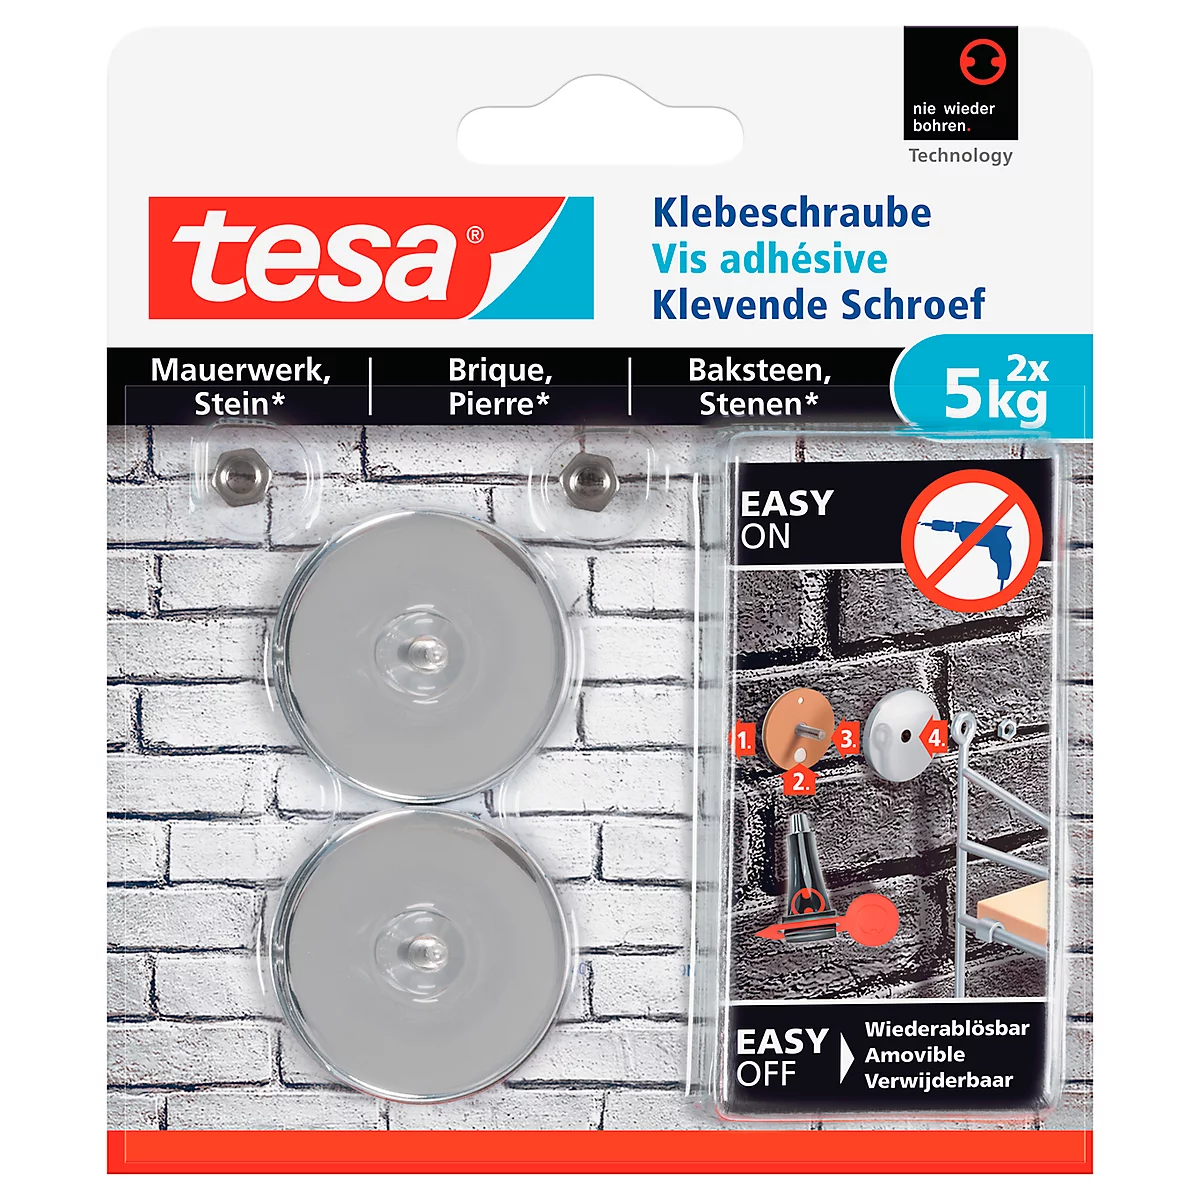 Klebeschraube tesa®, für Mauerwerk & Stein im Innen- & Außenbereich, Haftkraft bis 5 kg, ablösbar, rund, 2 Stück